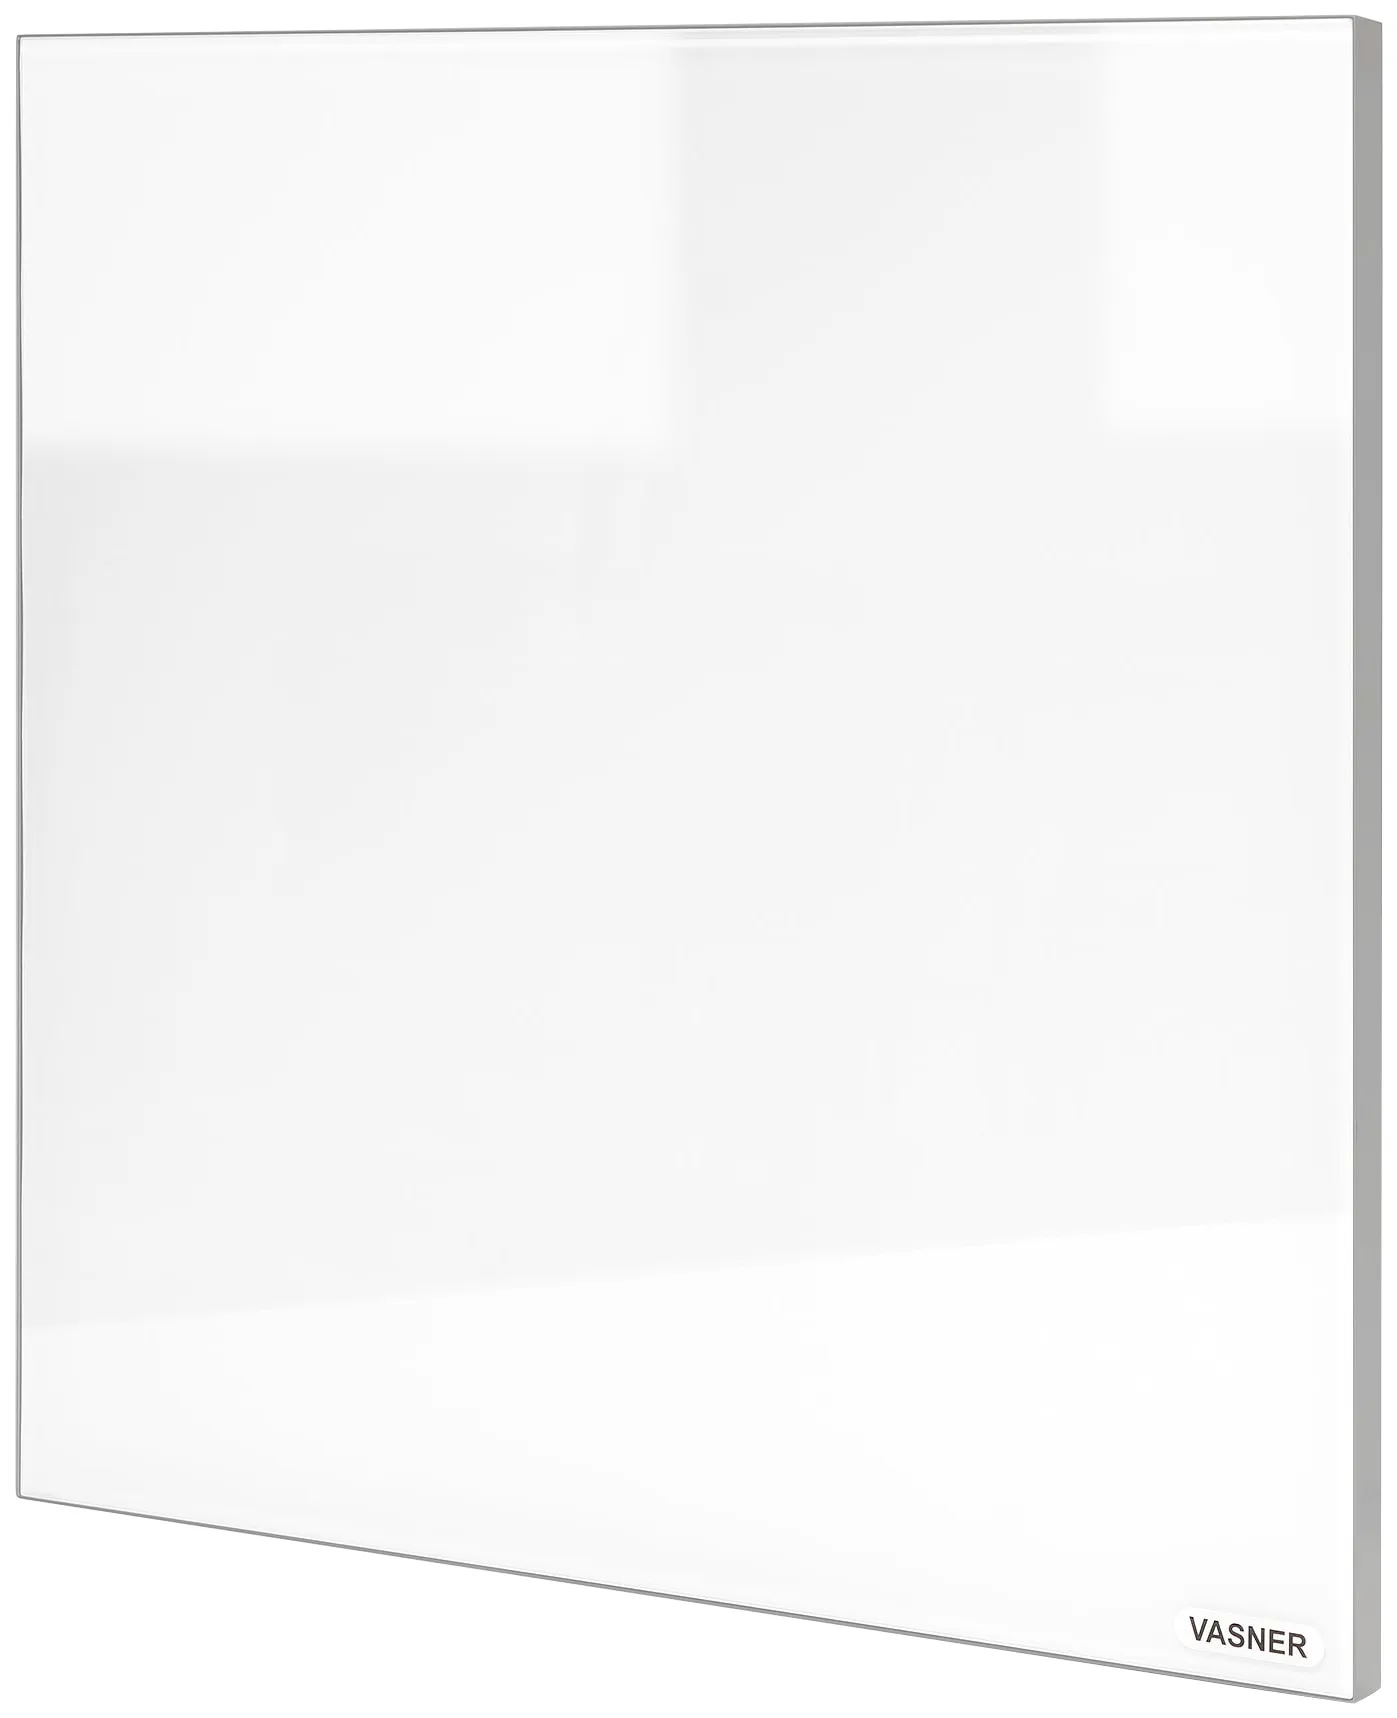 VASNER Infrarotheizung "Glas mit Rahmen grau, 700 W, Citara G" Heizkörper Infrarot Glasheizung, IP44 Bad geeignet Gr. B/H/T: 90 cm x 60 cm x 2,5 cm, 700 W, unten-rechts, weiß Heizkörper